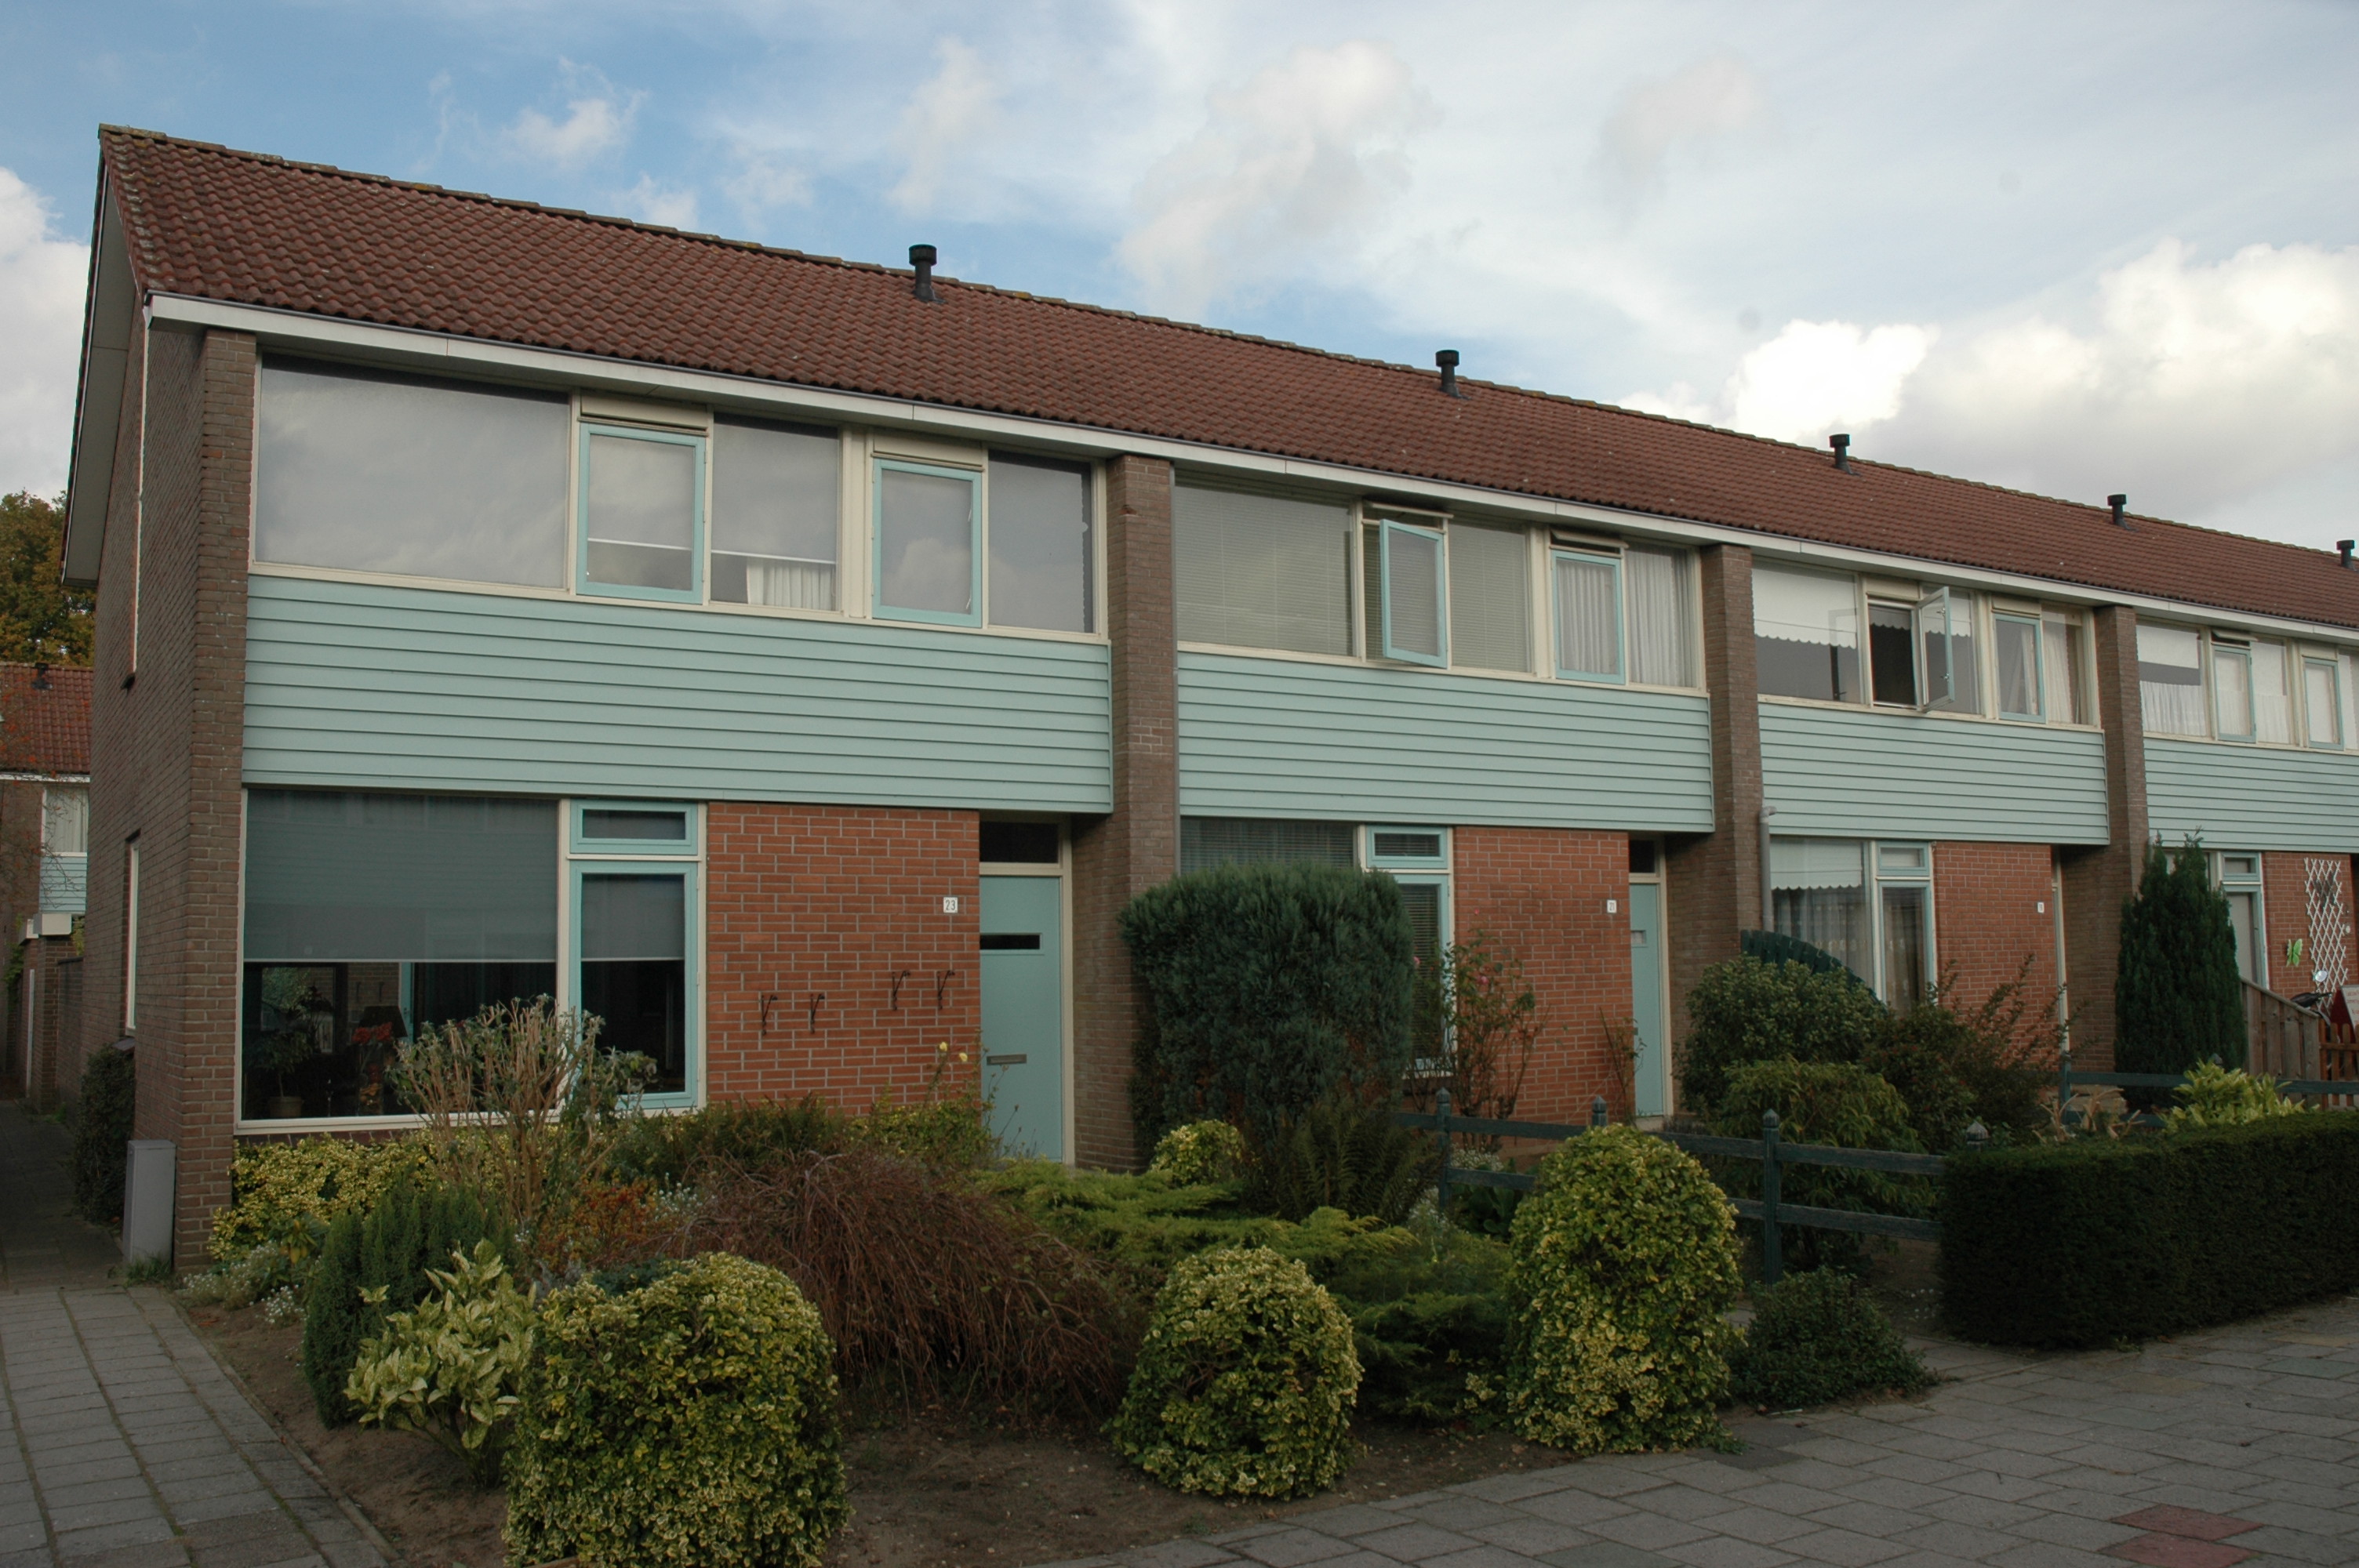 Debussystraat 15, 7604 HW Almelo, Nederland